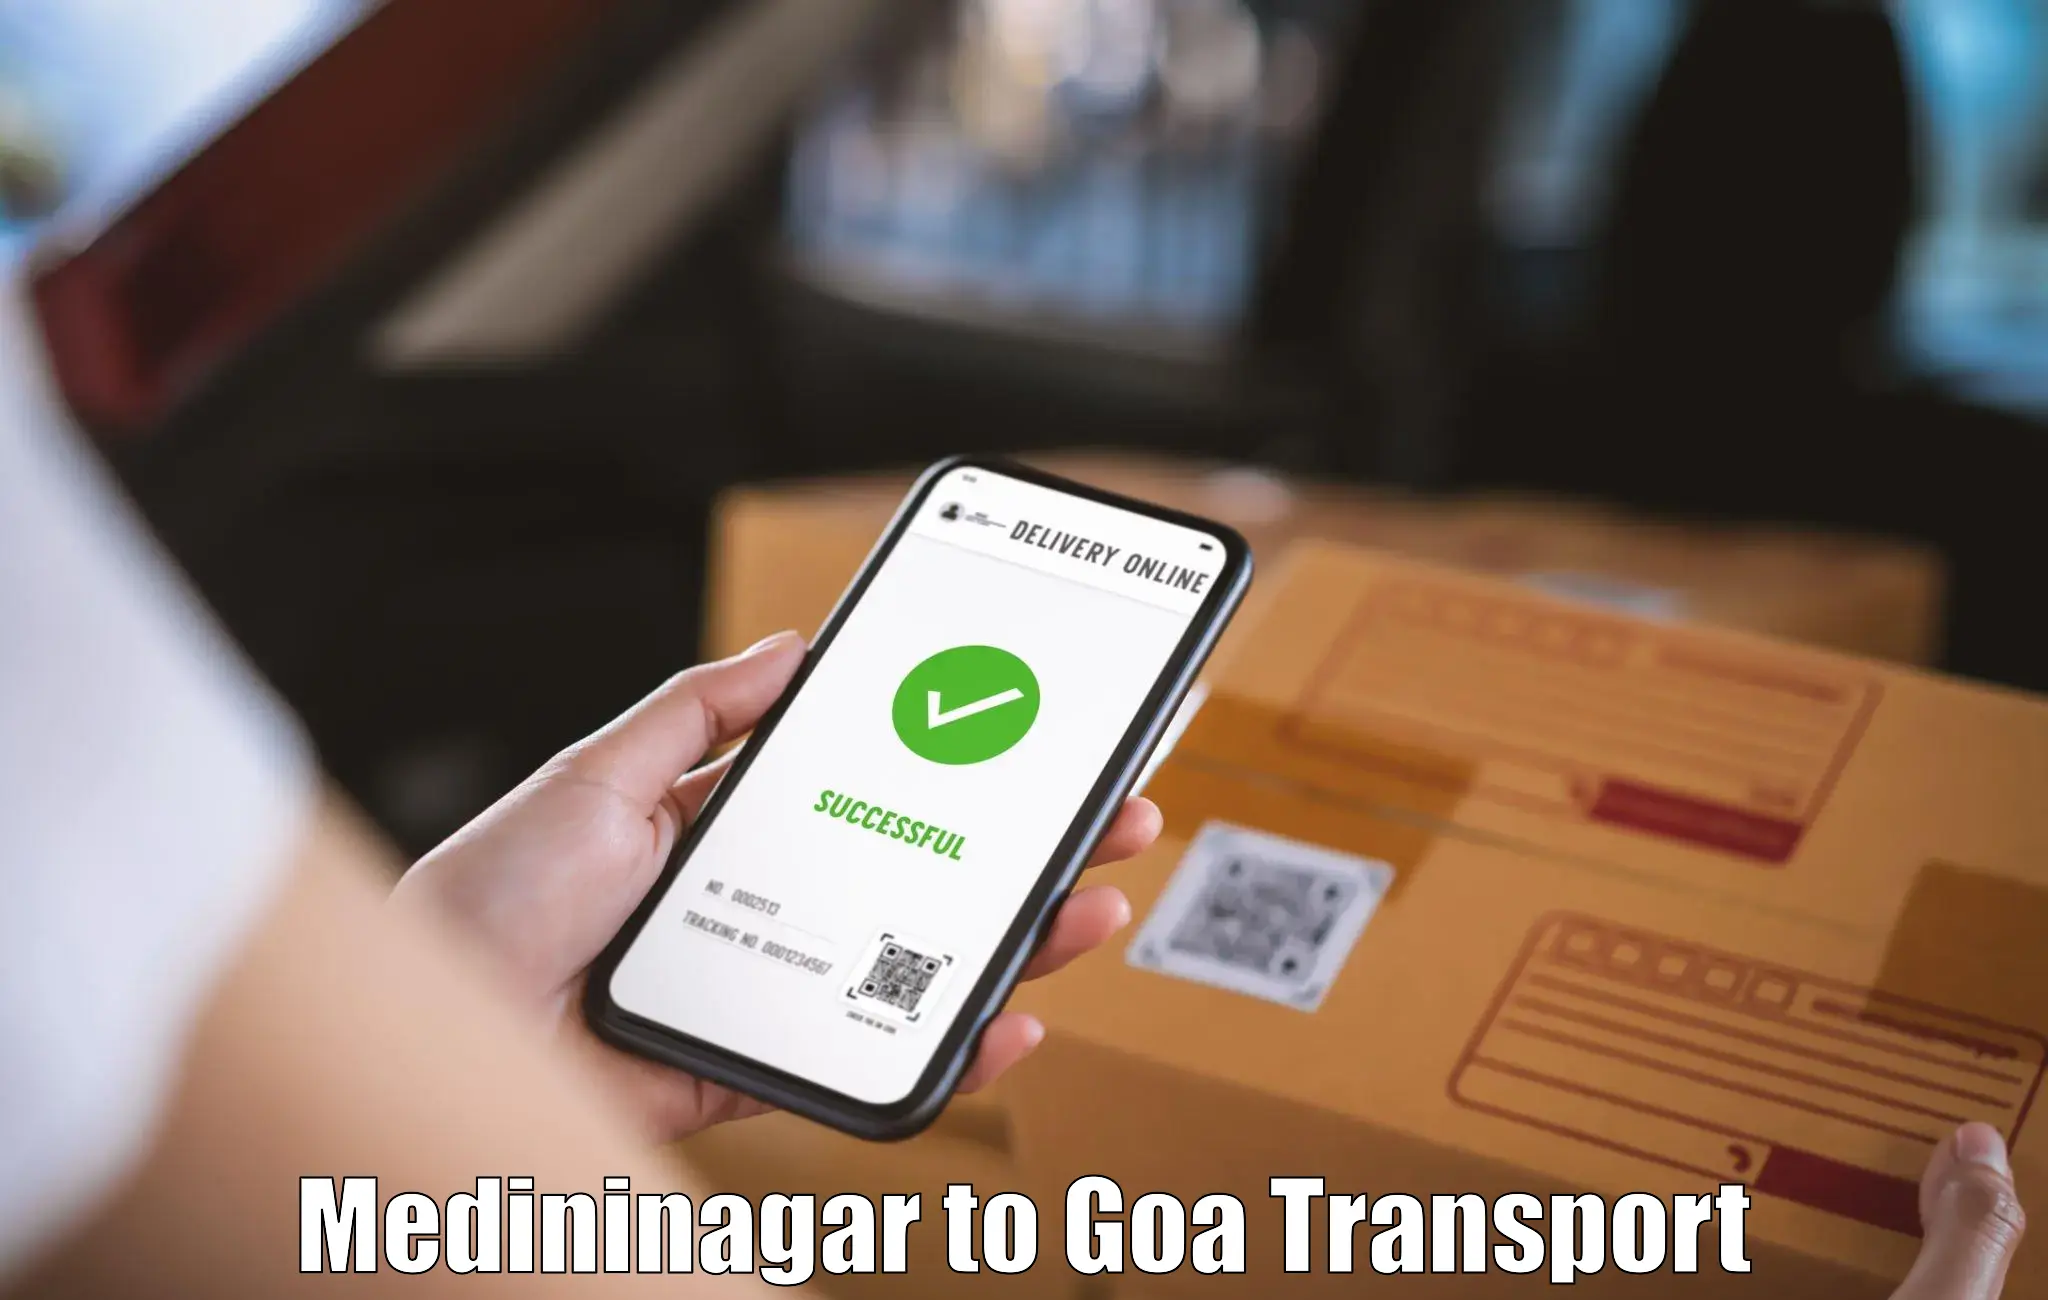 Road transport services Medininagar to Goa